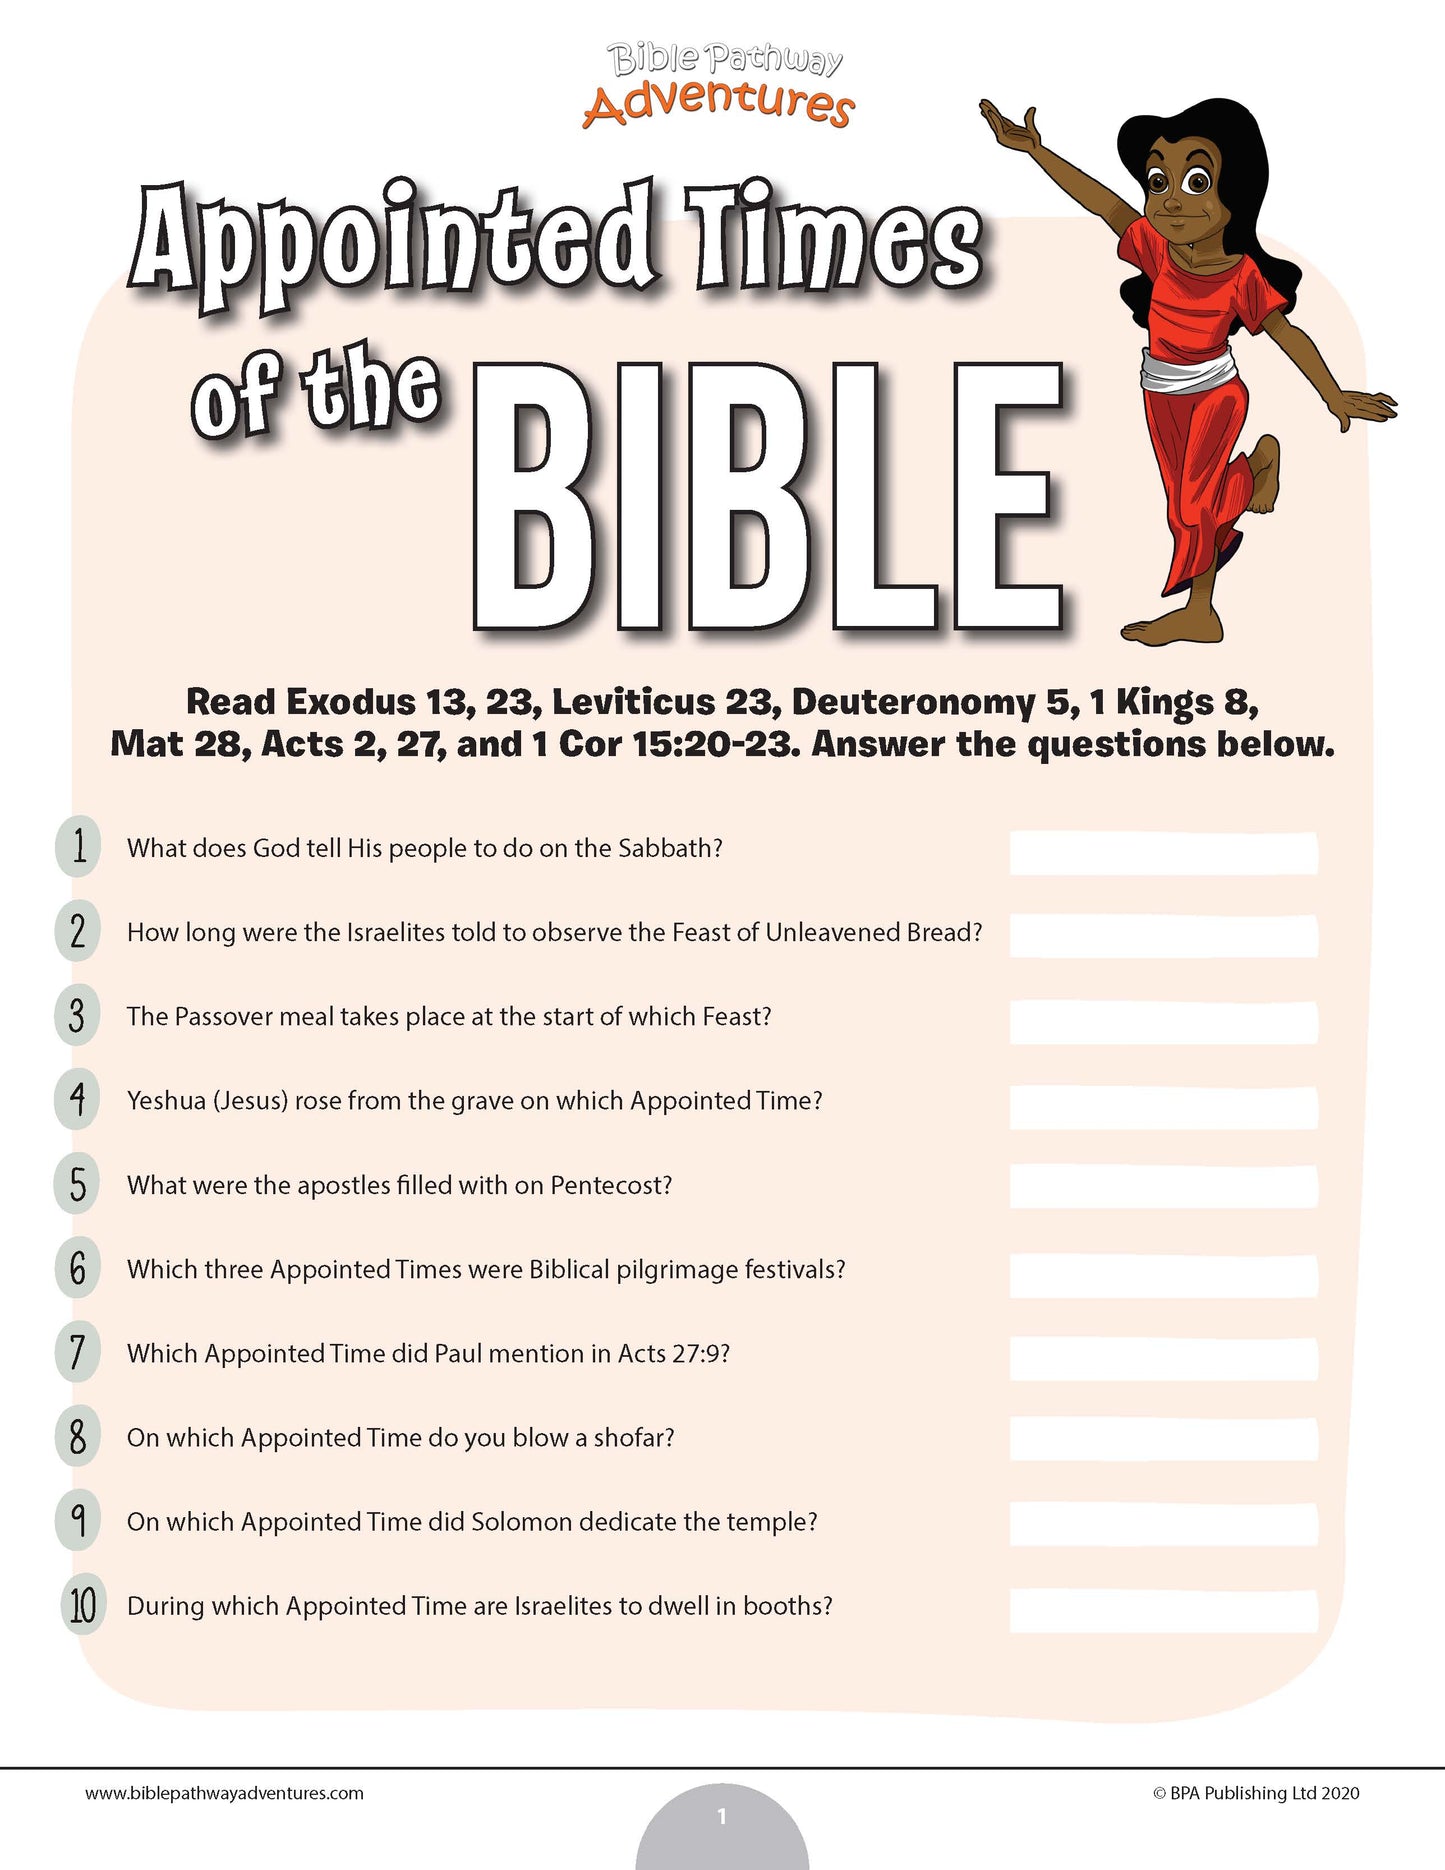 Cuestionario de los tiempos señalados de la Biblia